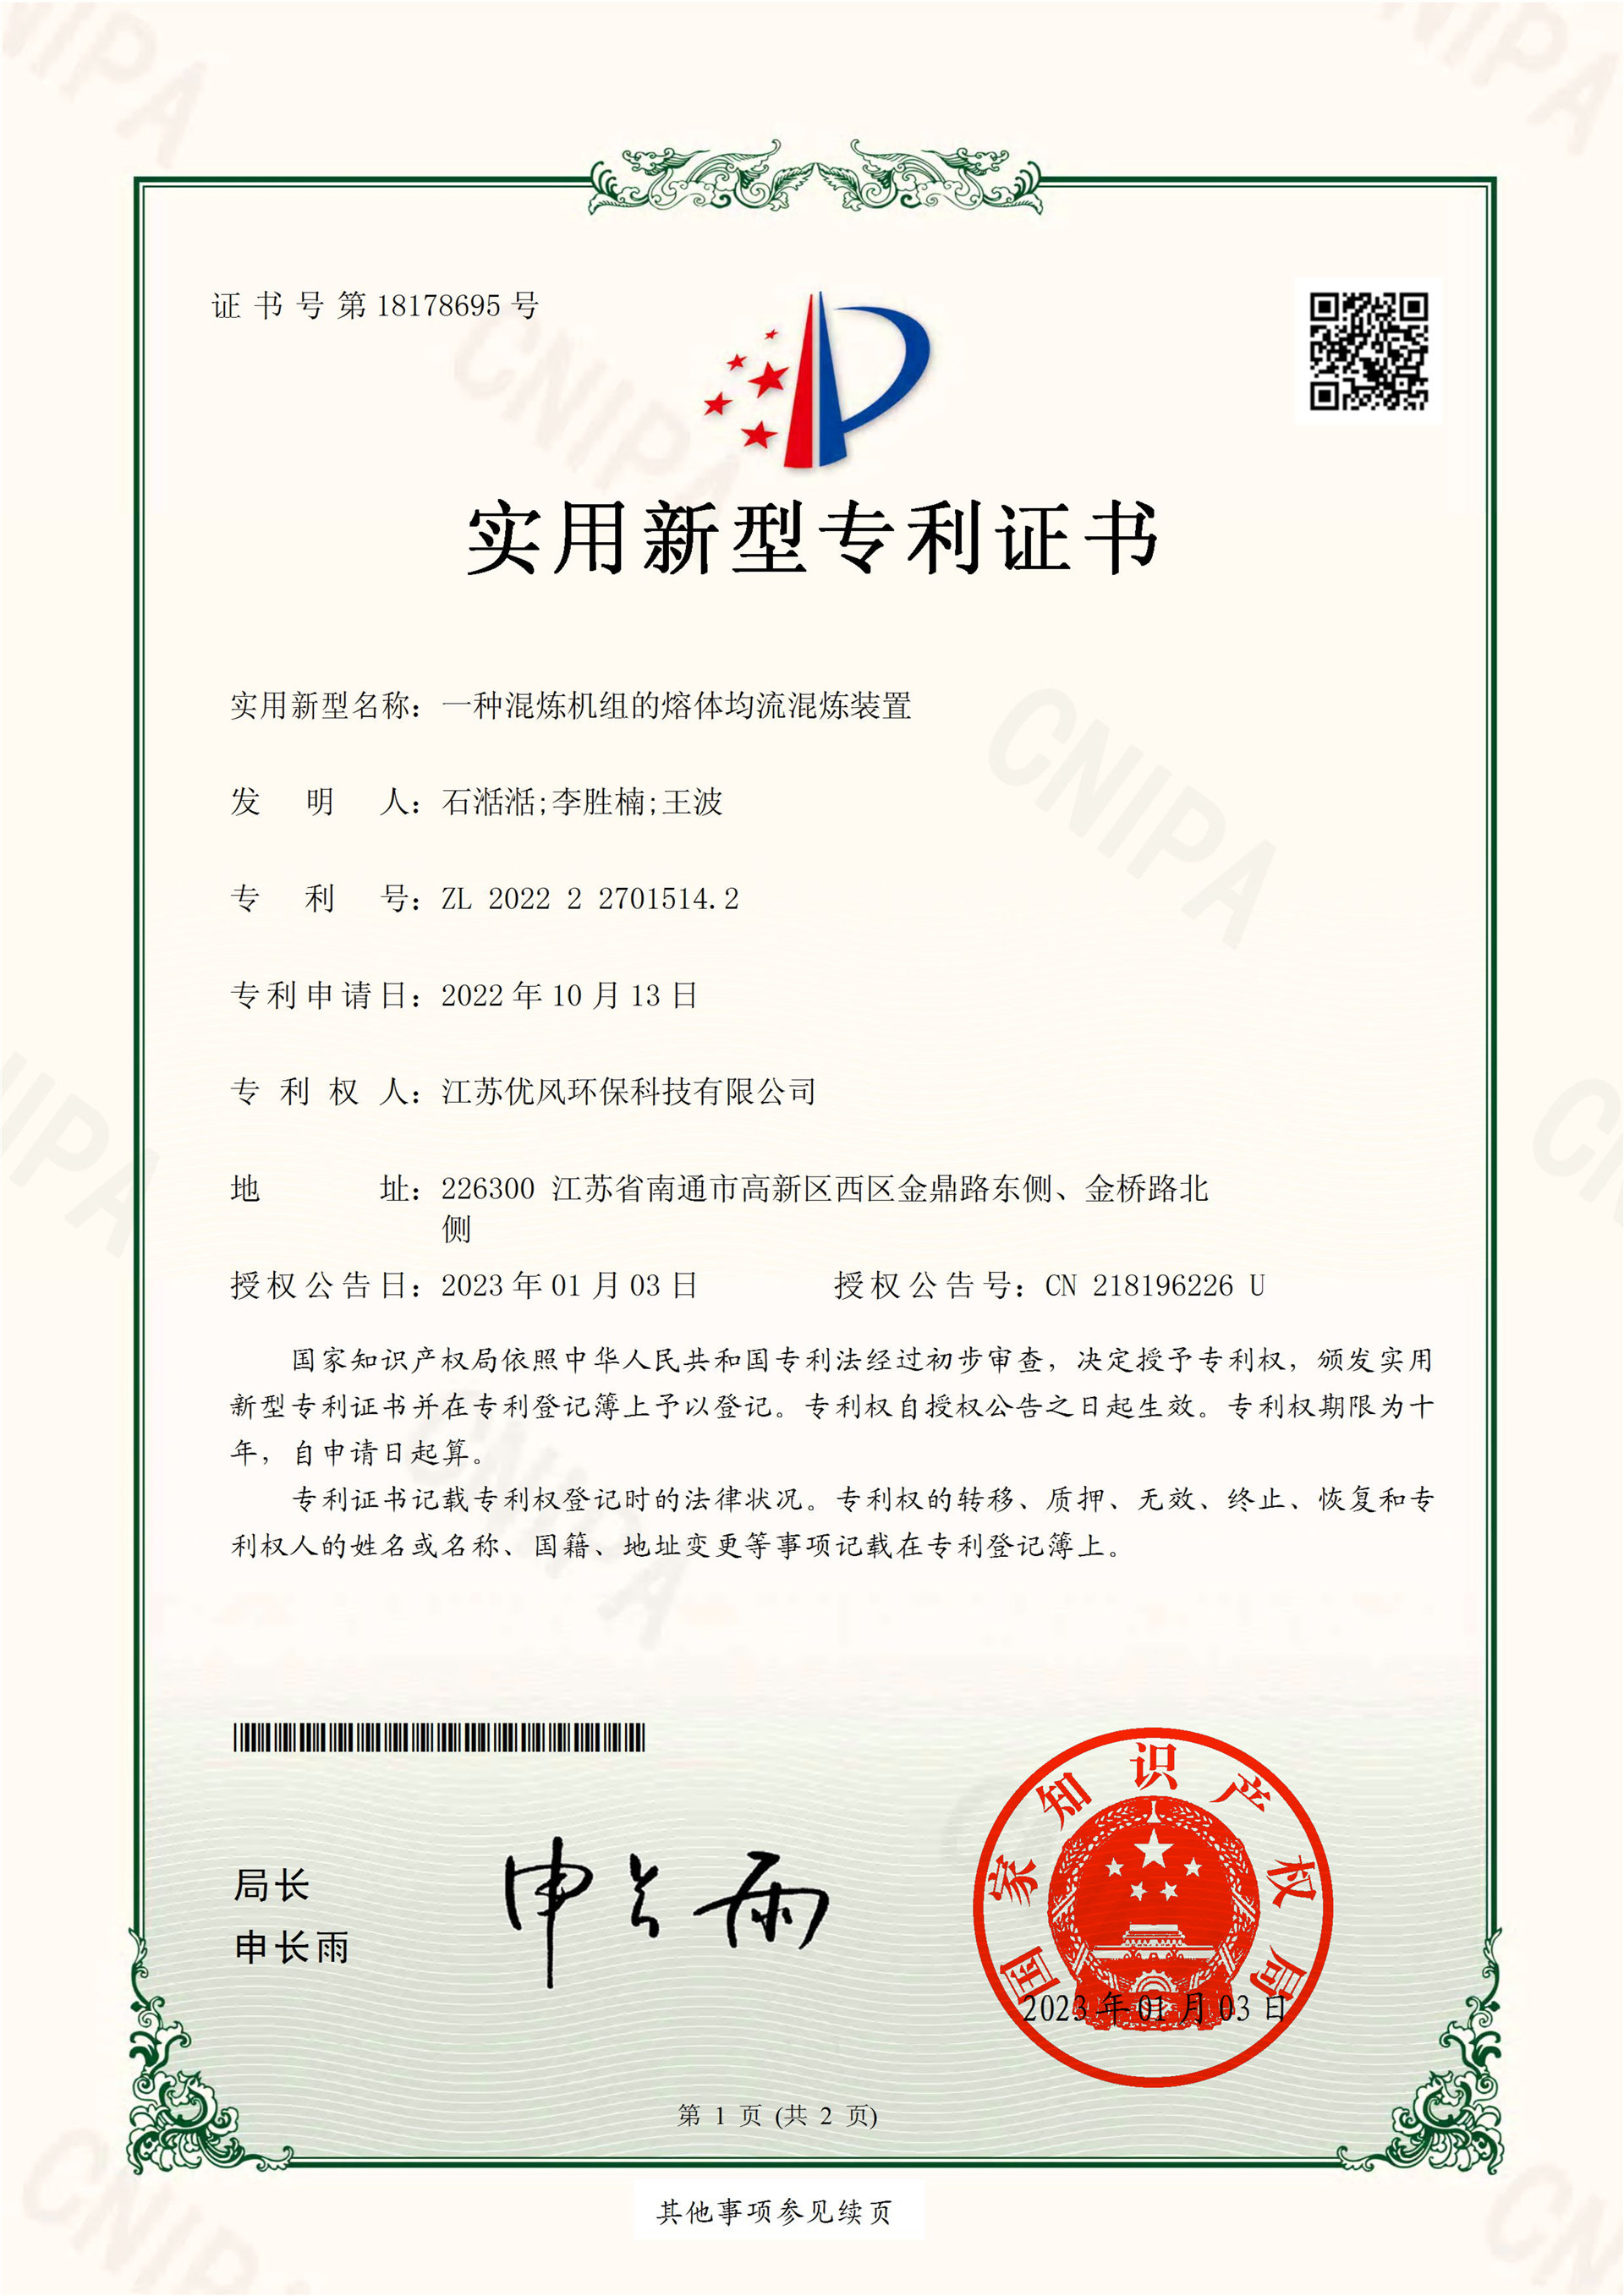 certificado6